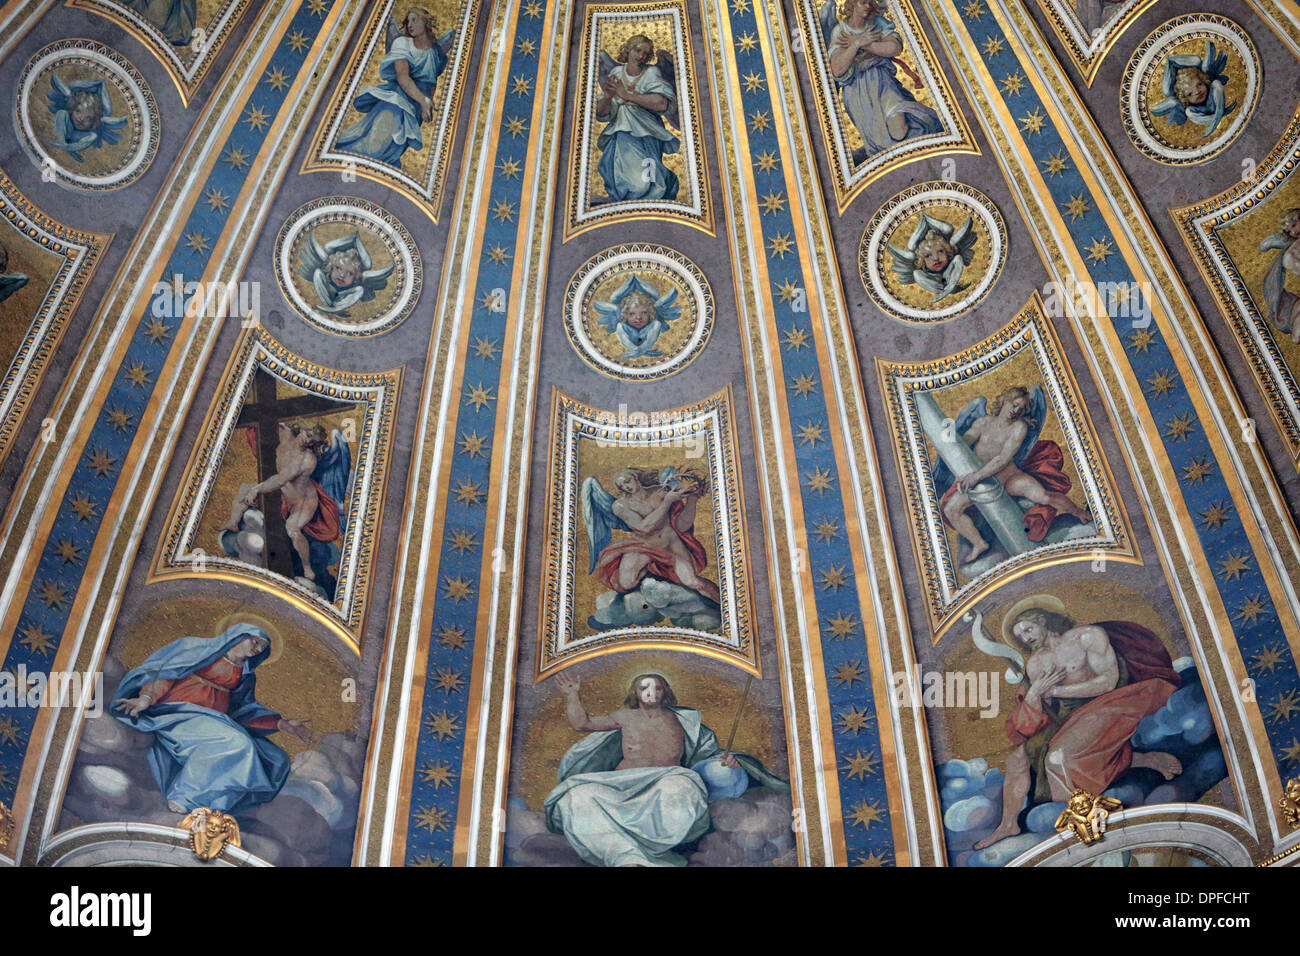 El techo de la cúpula de la Basílica de San Pedro de Miguel Ángel Buonarroti, Domenico Fontana, Giacomo della Porta, Roma, Lazio, Italia Foto de stock